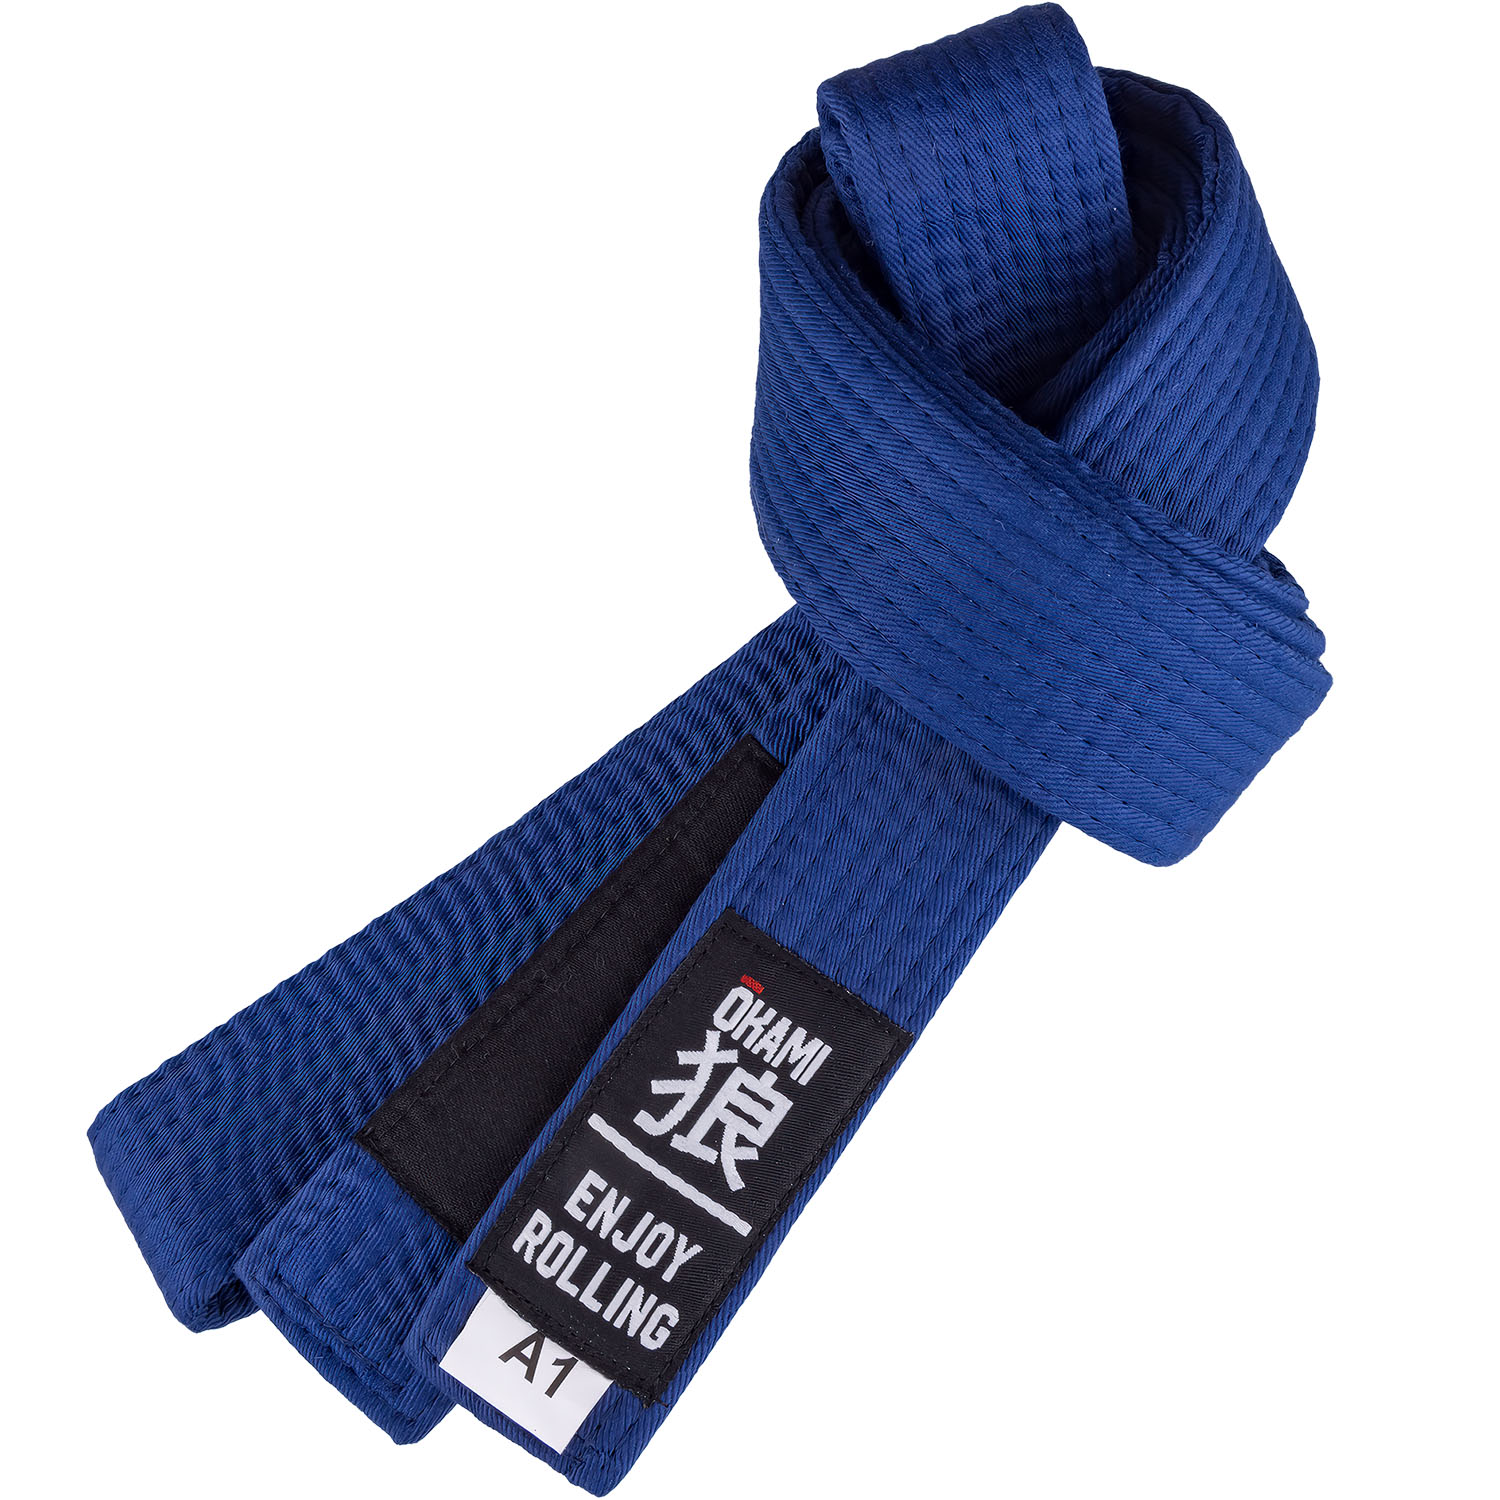 OKAMI BJJ Belt, Luta Livre, blue, A1